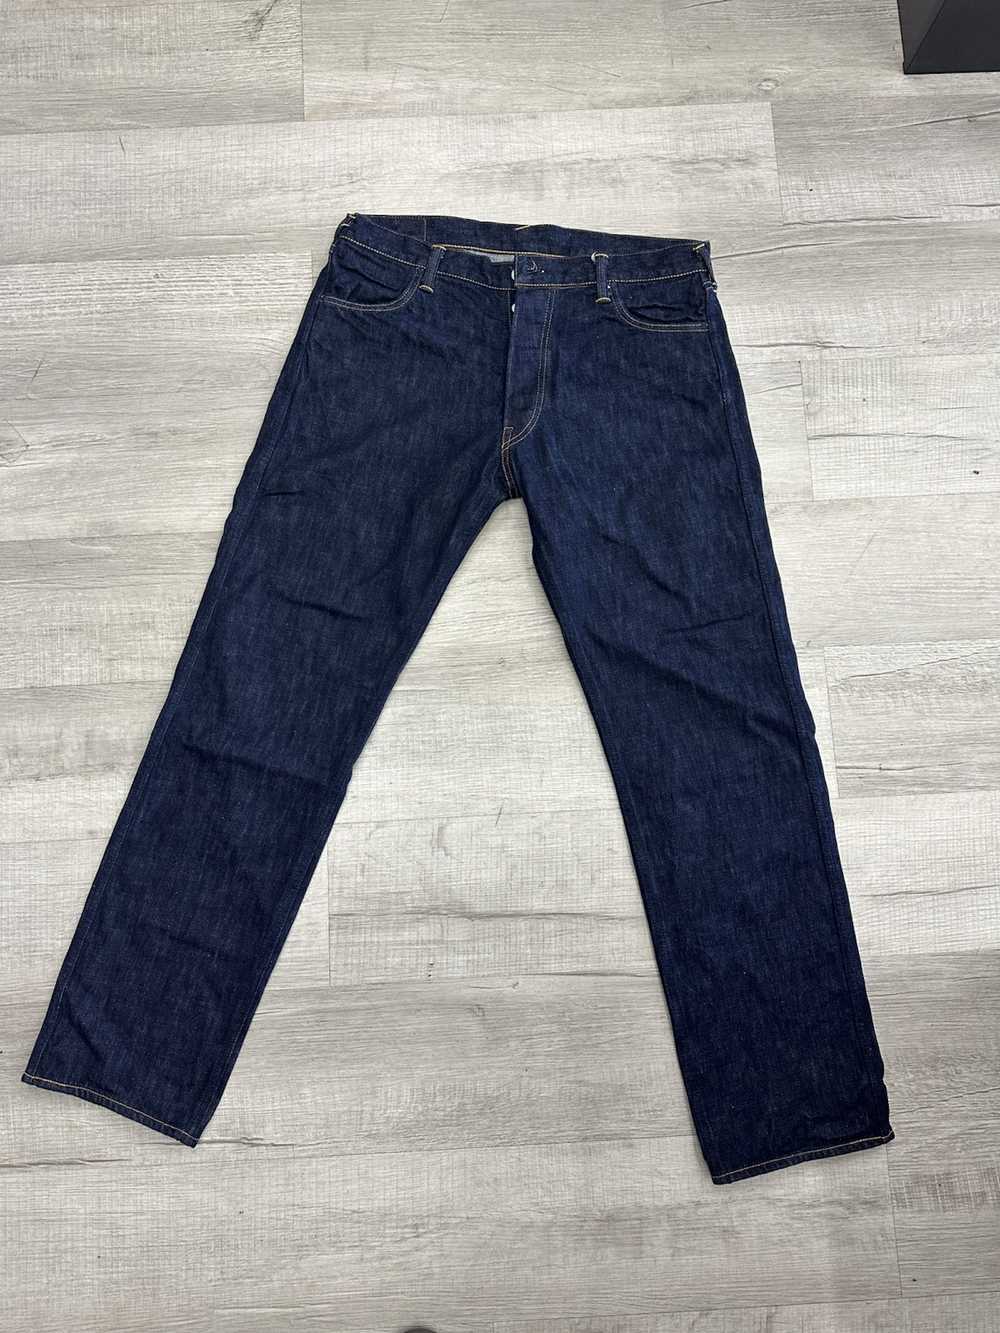 Evisu × Japanese Brand Evisu Jeans Selvedge Denim… - image 2